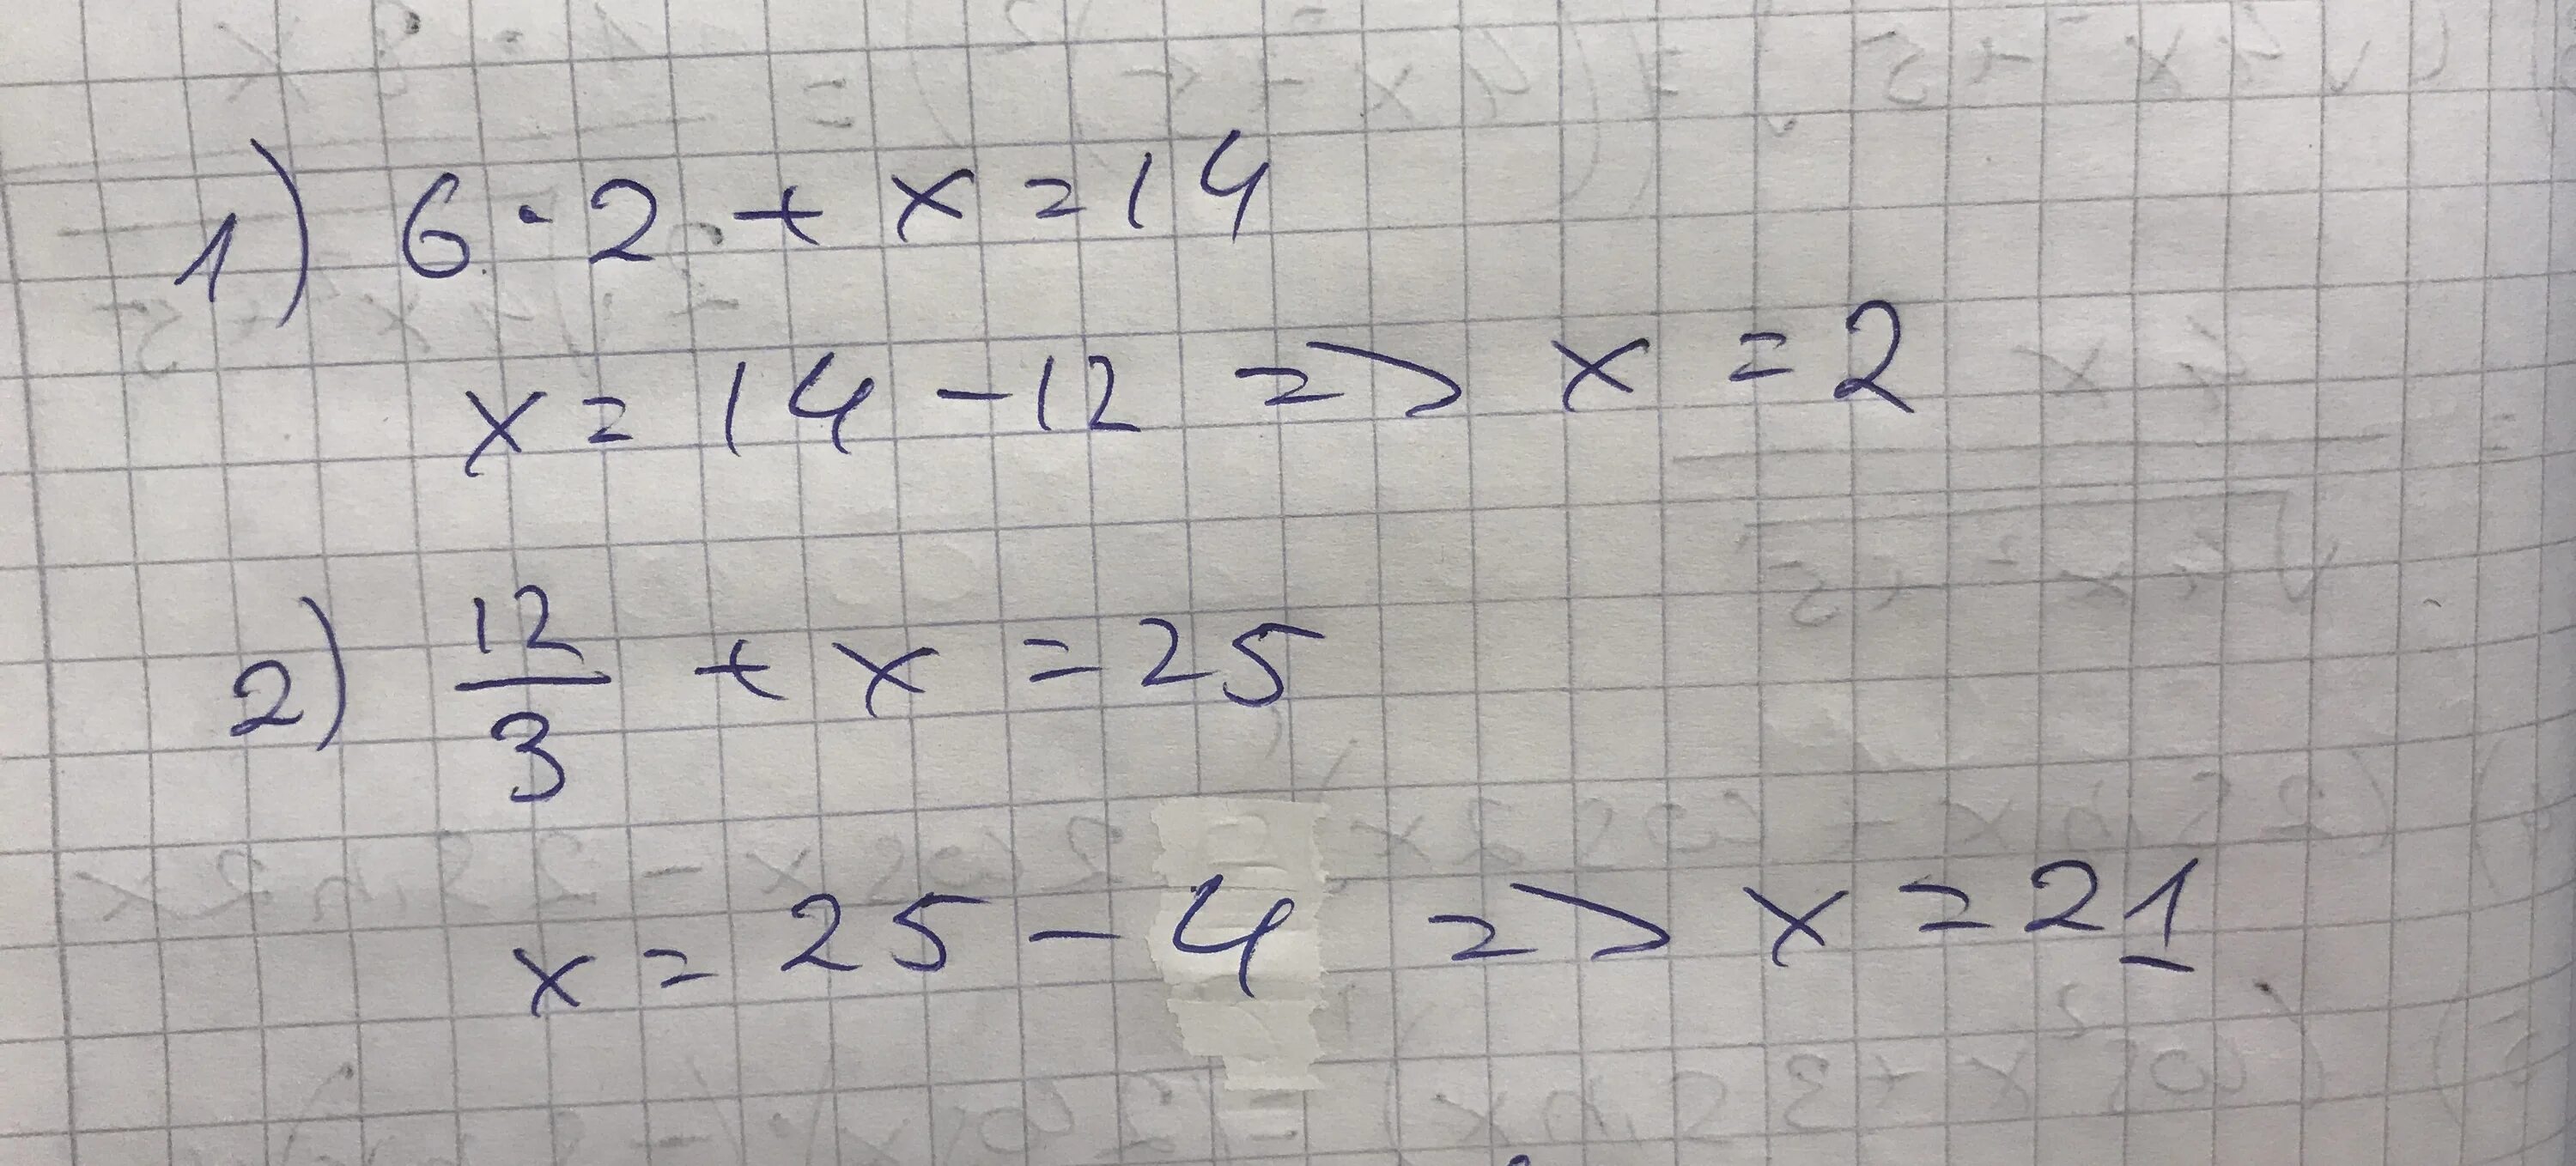 Сколько 15 плюс 16. Решение уравнения 12 разделить на Икс равно 3. Уравнение Икс разделить на 3 равно 6. Минус 2 Икс деленное на 5 и минус 2 Икс деленное на 3. Икс равно.